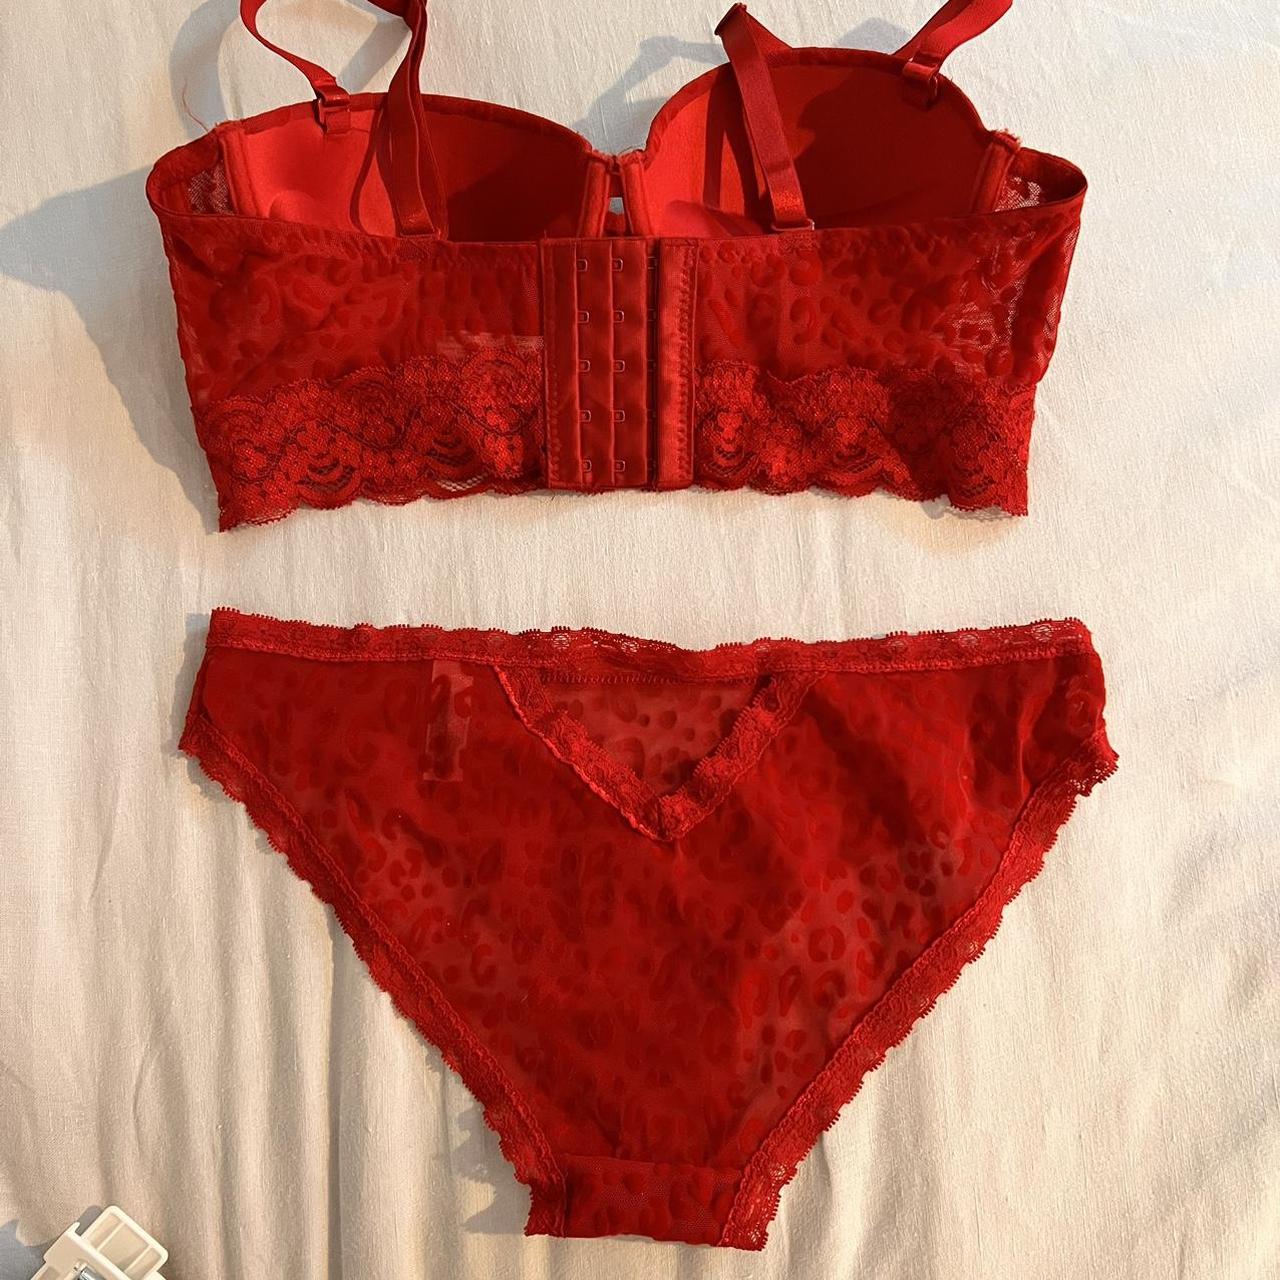 Bra and underwear set, women’s size 34B, Brand